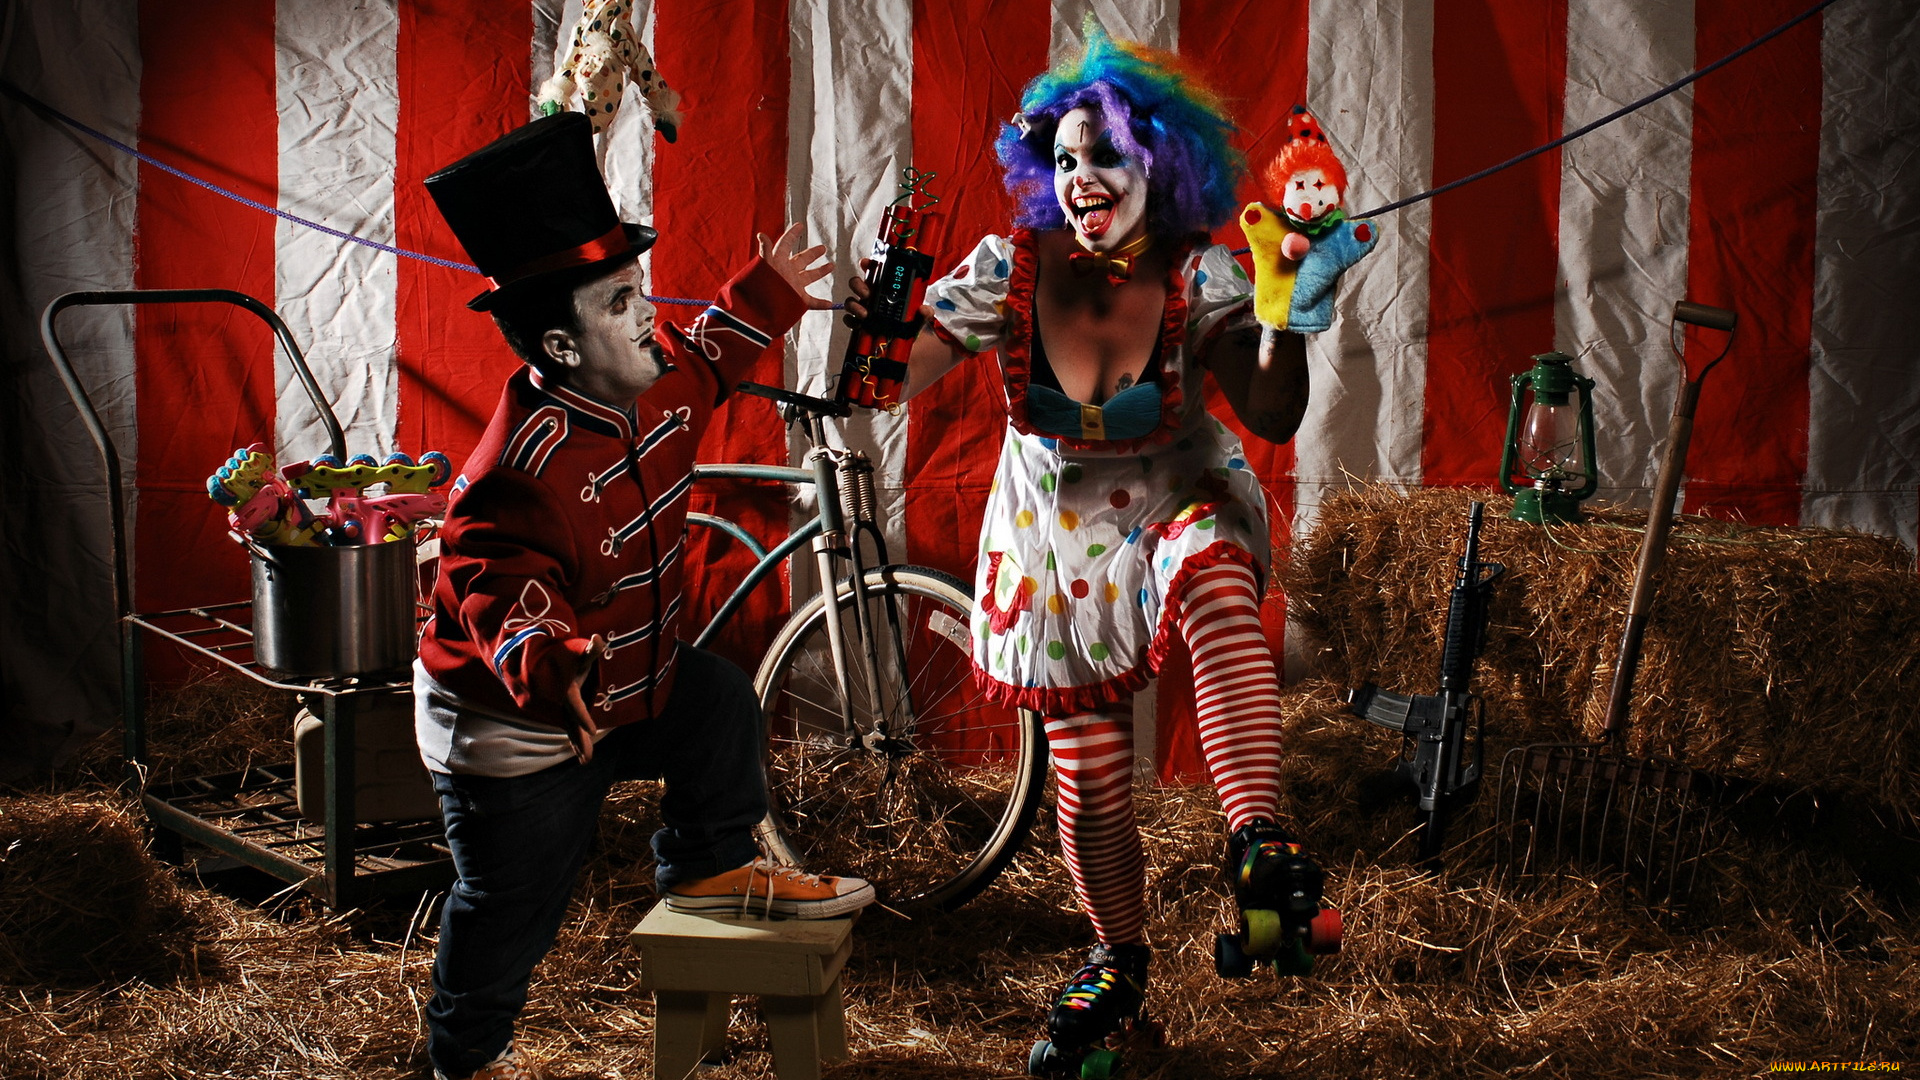 разное, маски, карнавальные, костюмы, цирк, велосипед, клоунесса, динамит, автомат, вилы, лампа, сено, ролики